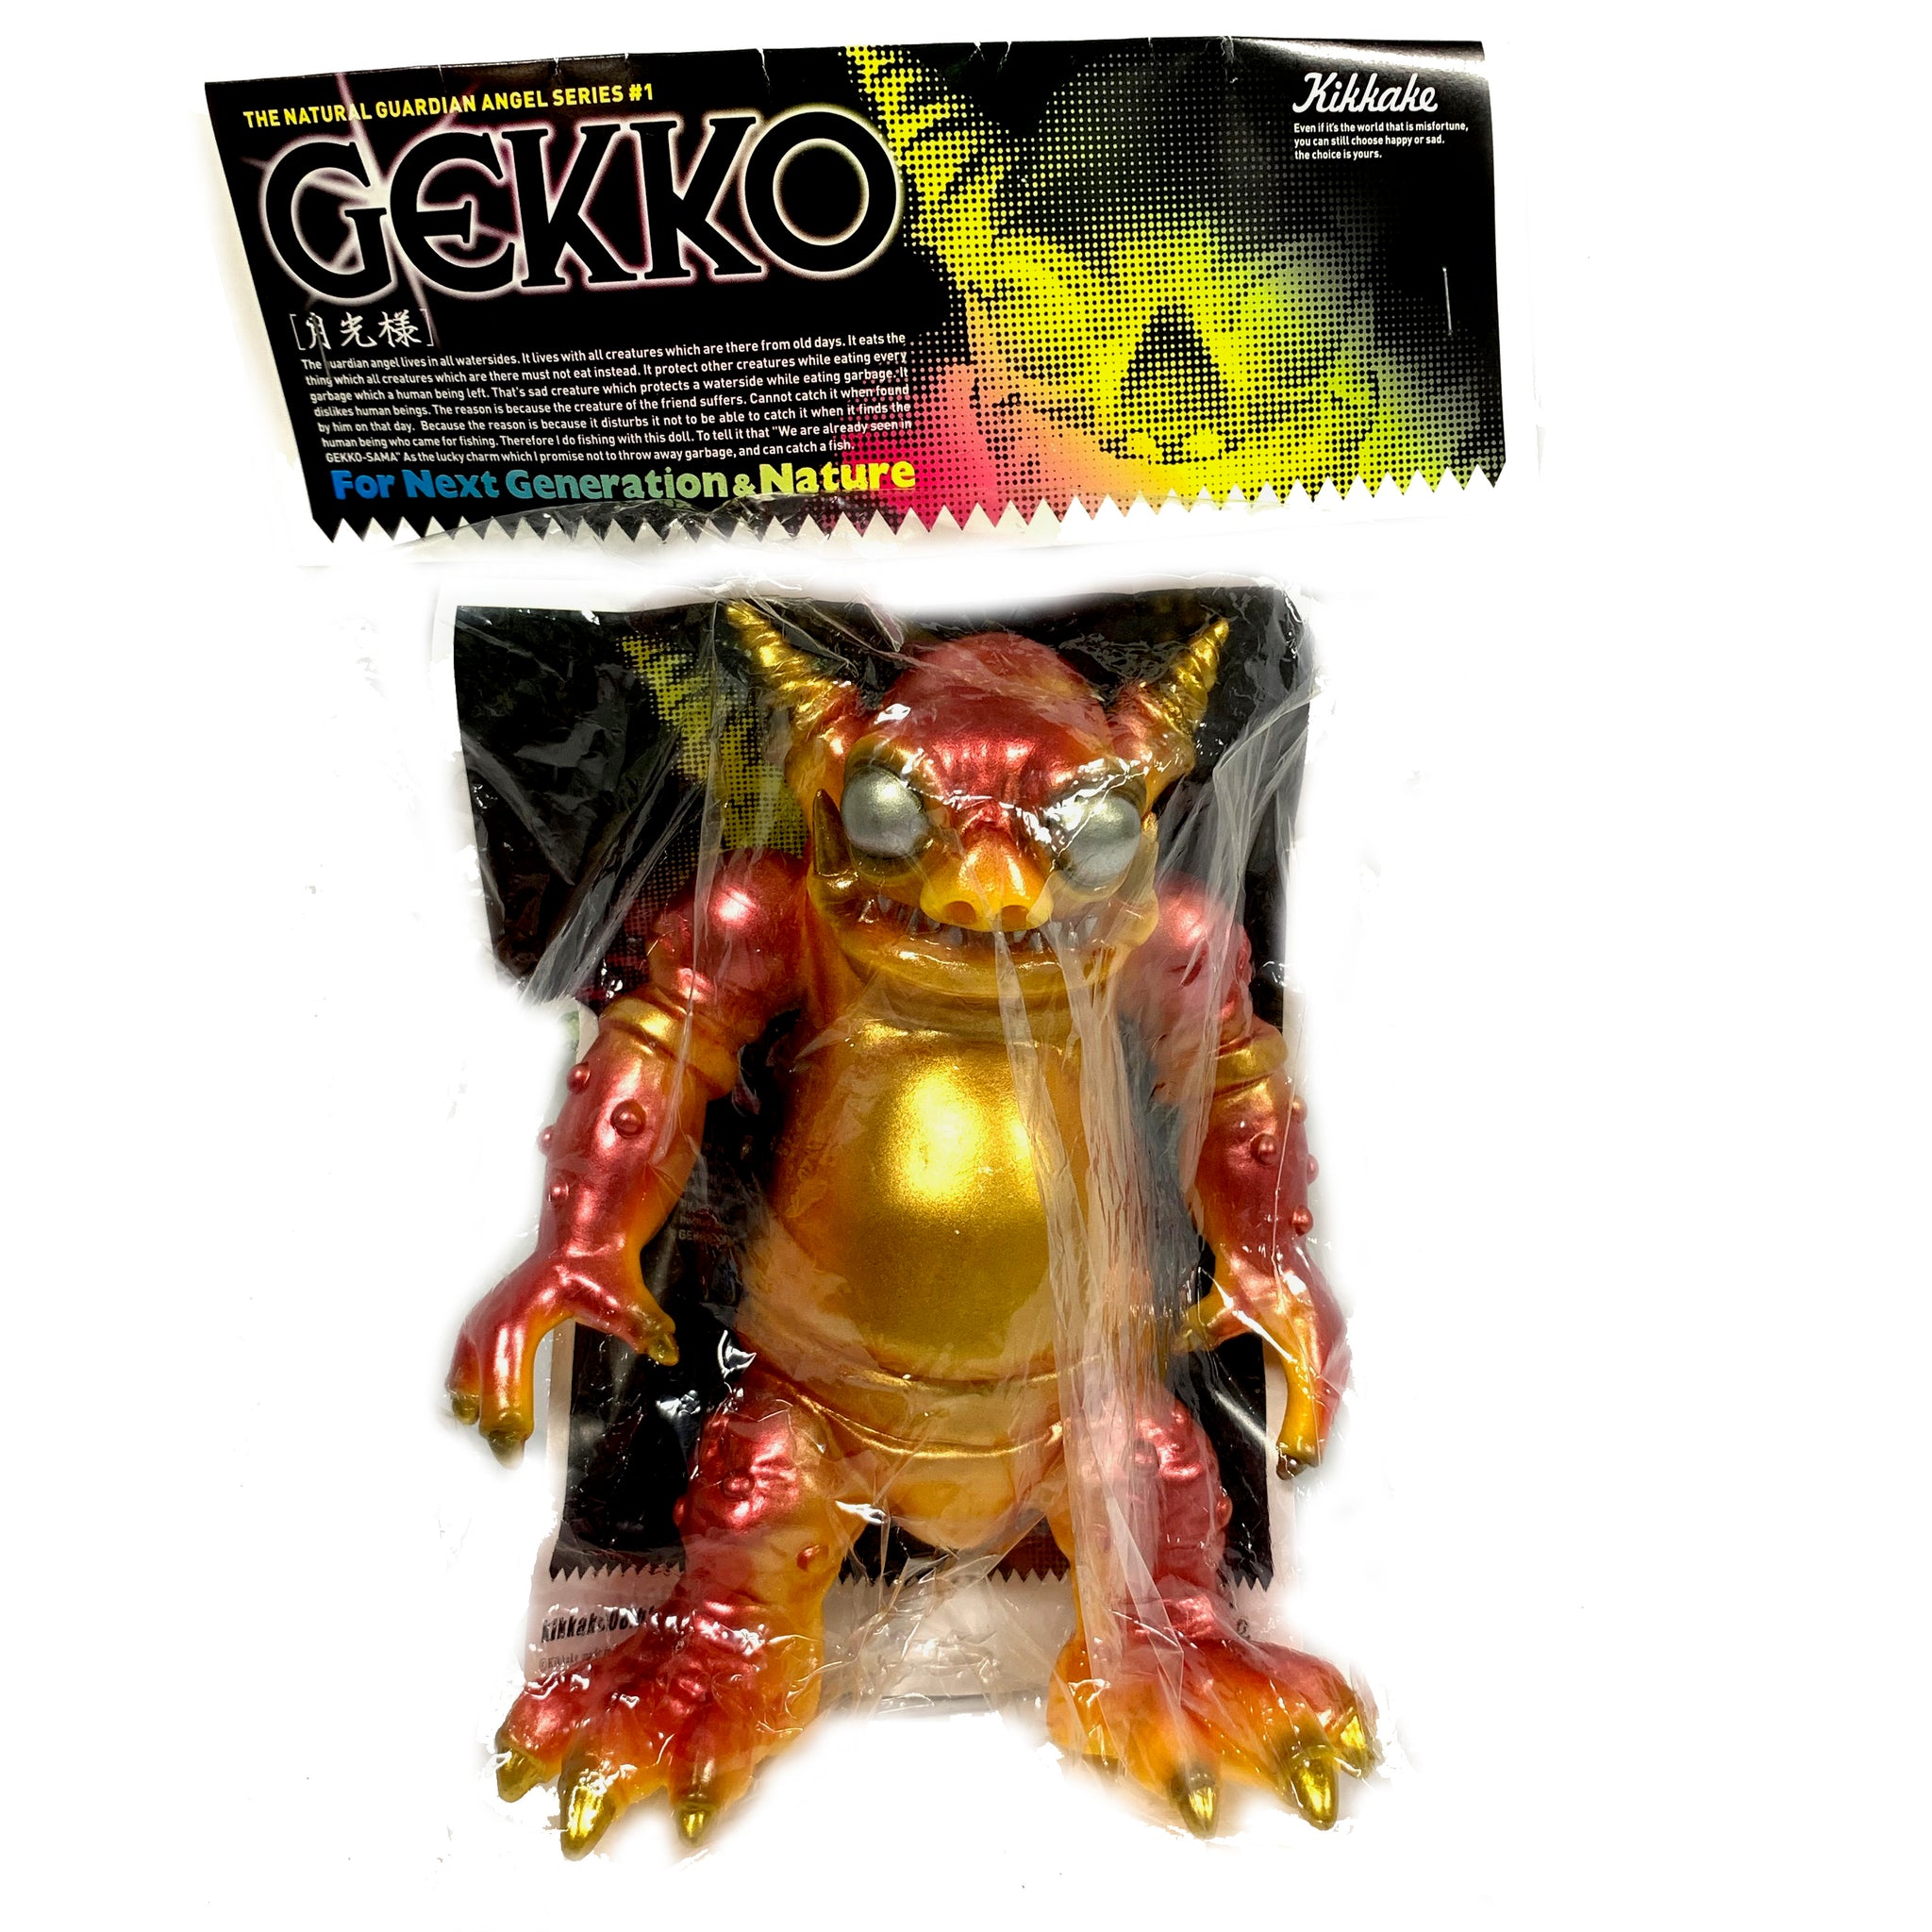 GEKKO from The Natural Guardian Angel Series  - 6" tall - #1 - Vintage Kikkake